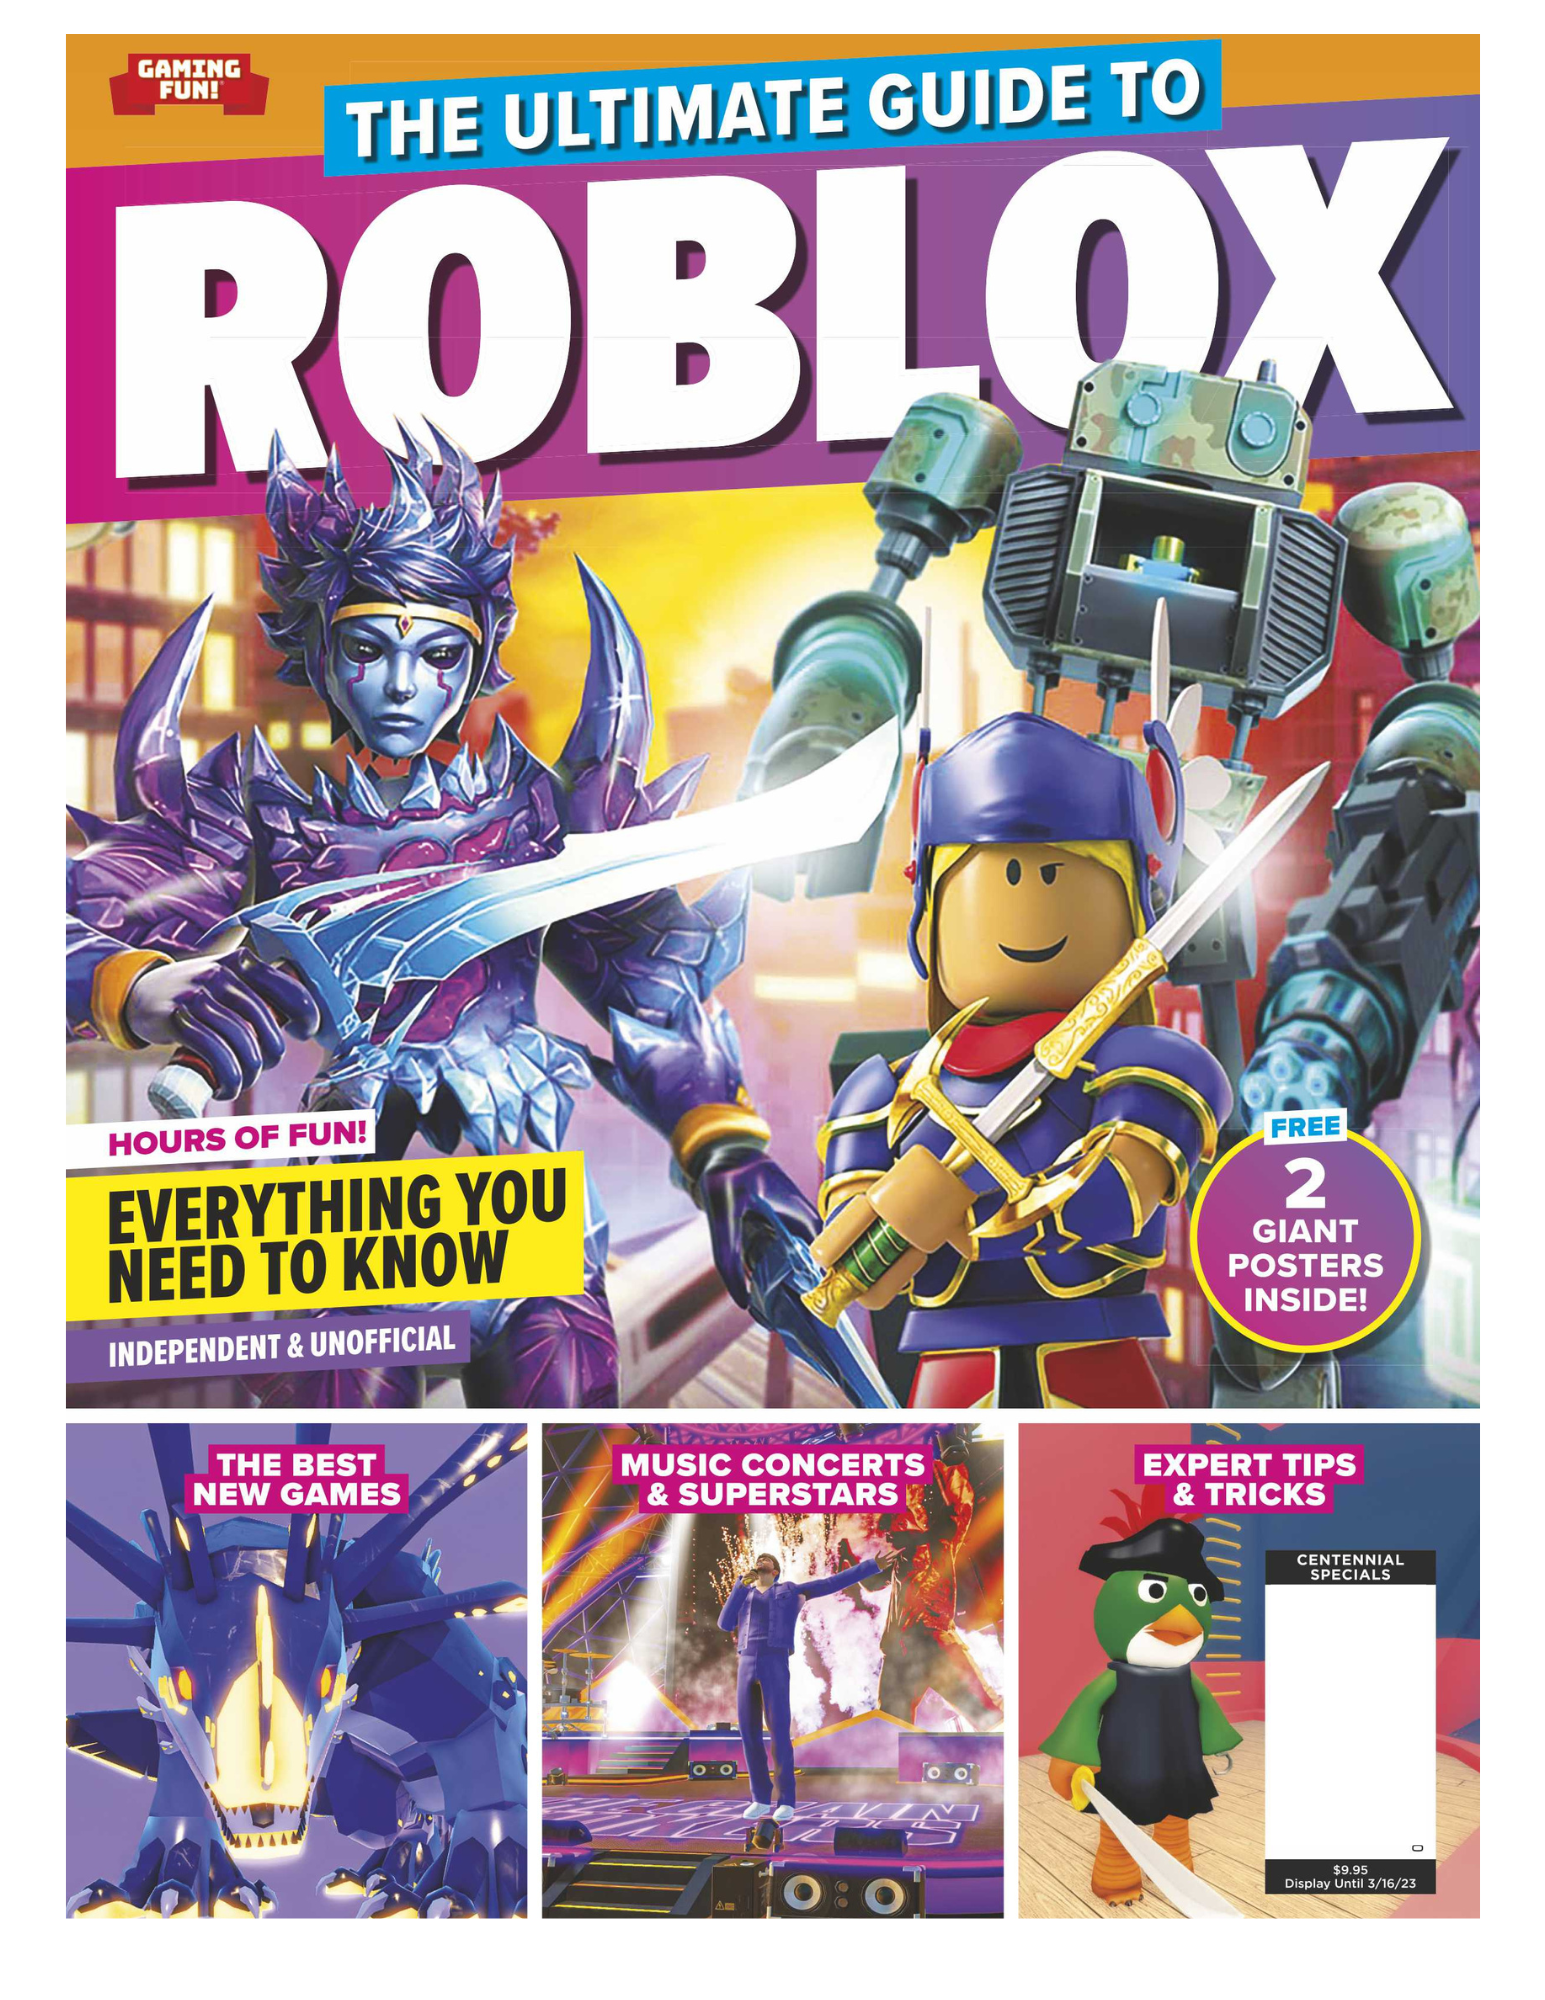 ROBLOX Premium Breakdown - Roblox Guide - IGN